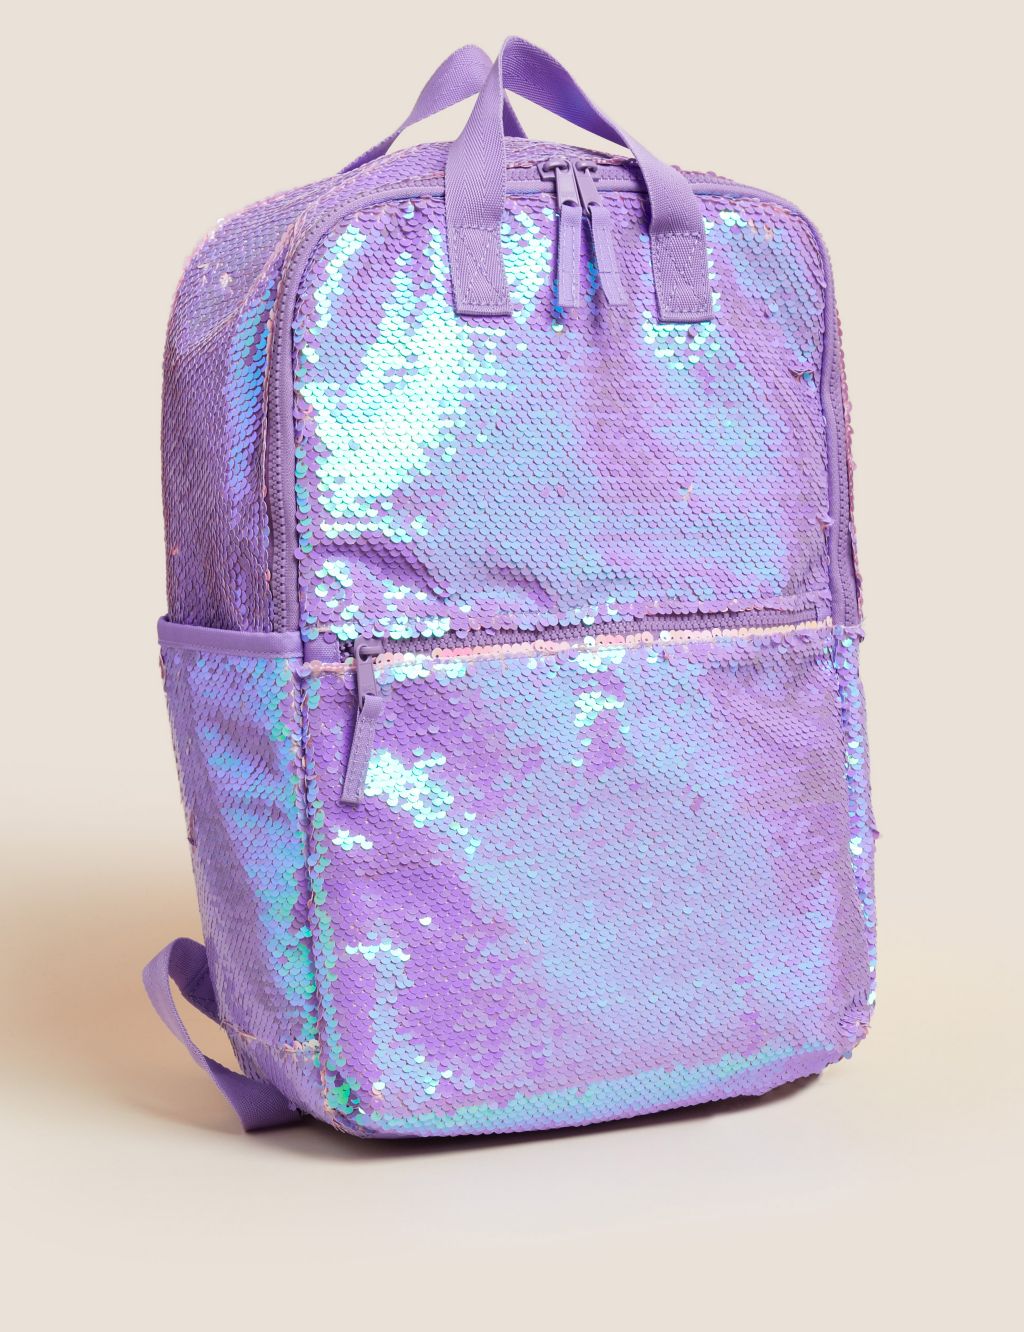 Kids' Reversible Sequin School Backpack image 1